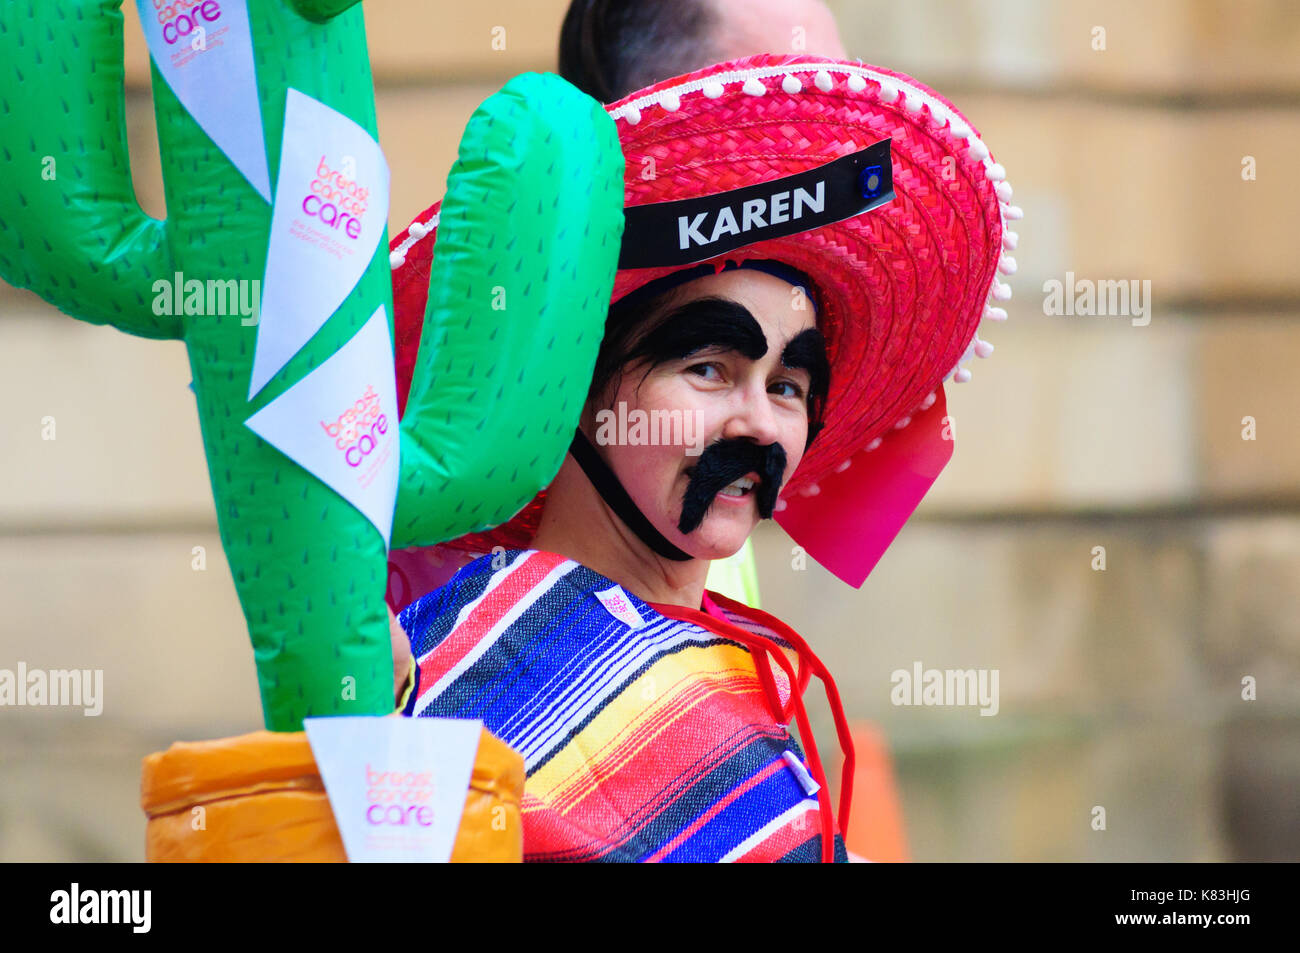 Glasgow, Schottland - Oktober 2, 2016: Runner namens Karen konkurrieren auf den Straßen der Stadt während der großen schottischen ausführen, gekleidet wie ein mexikanischer Stockfoto